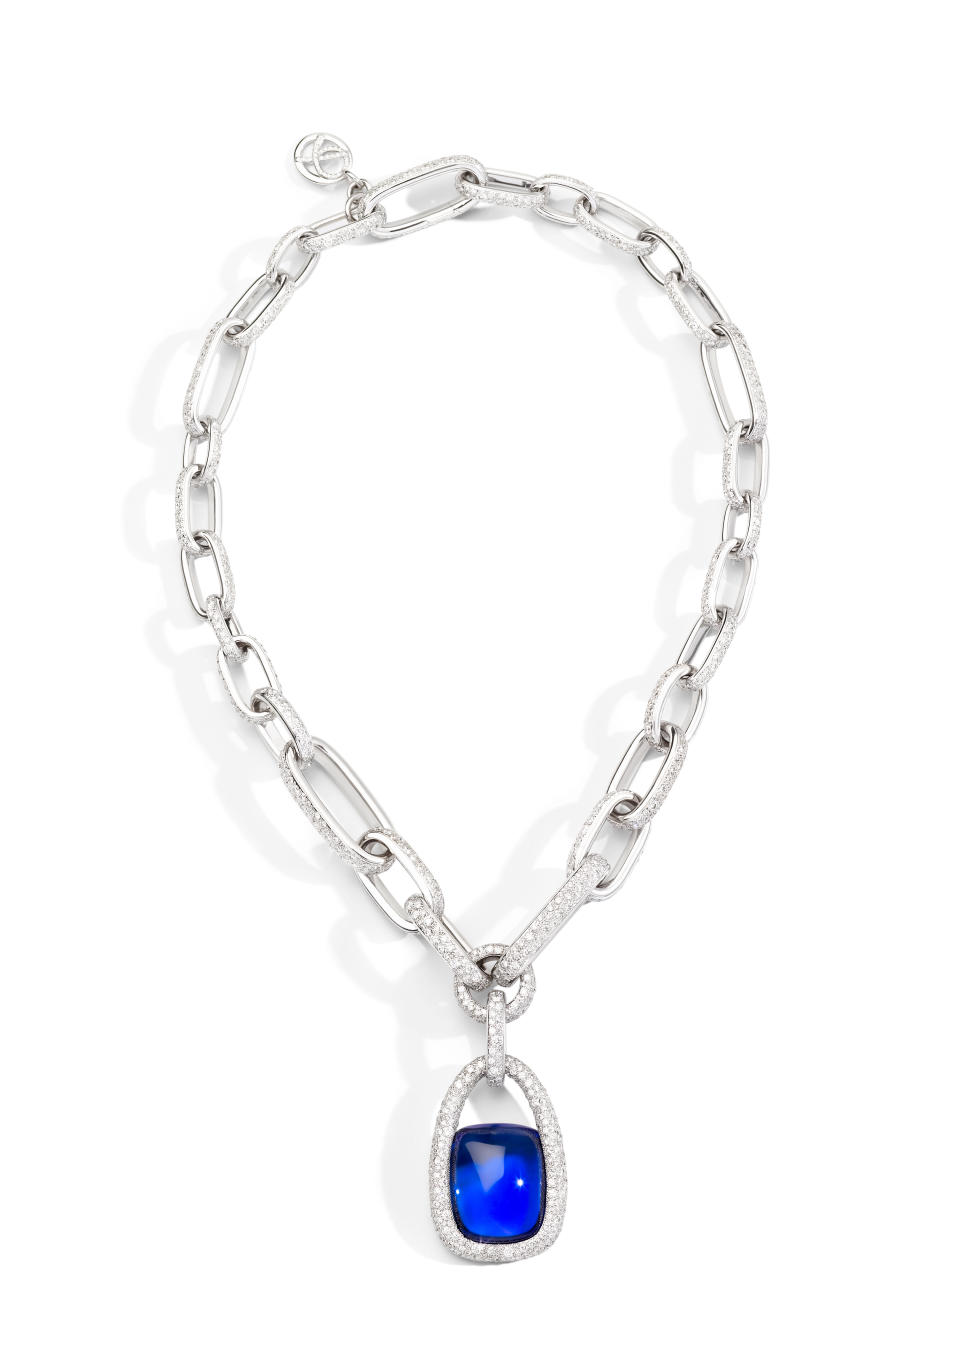 Pomellato’s Tanzanite Princess Chain necklace. - Credit: courtesy image